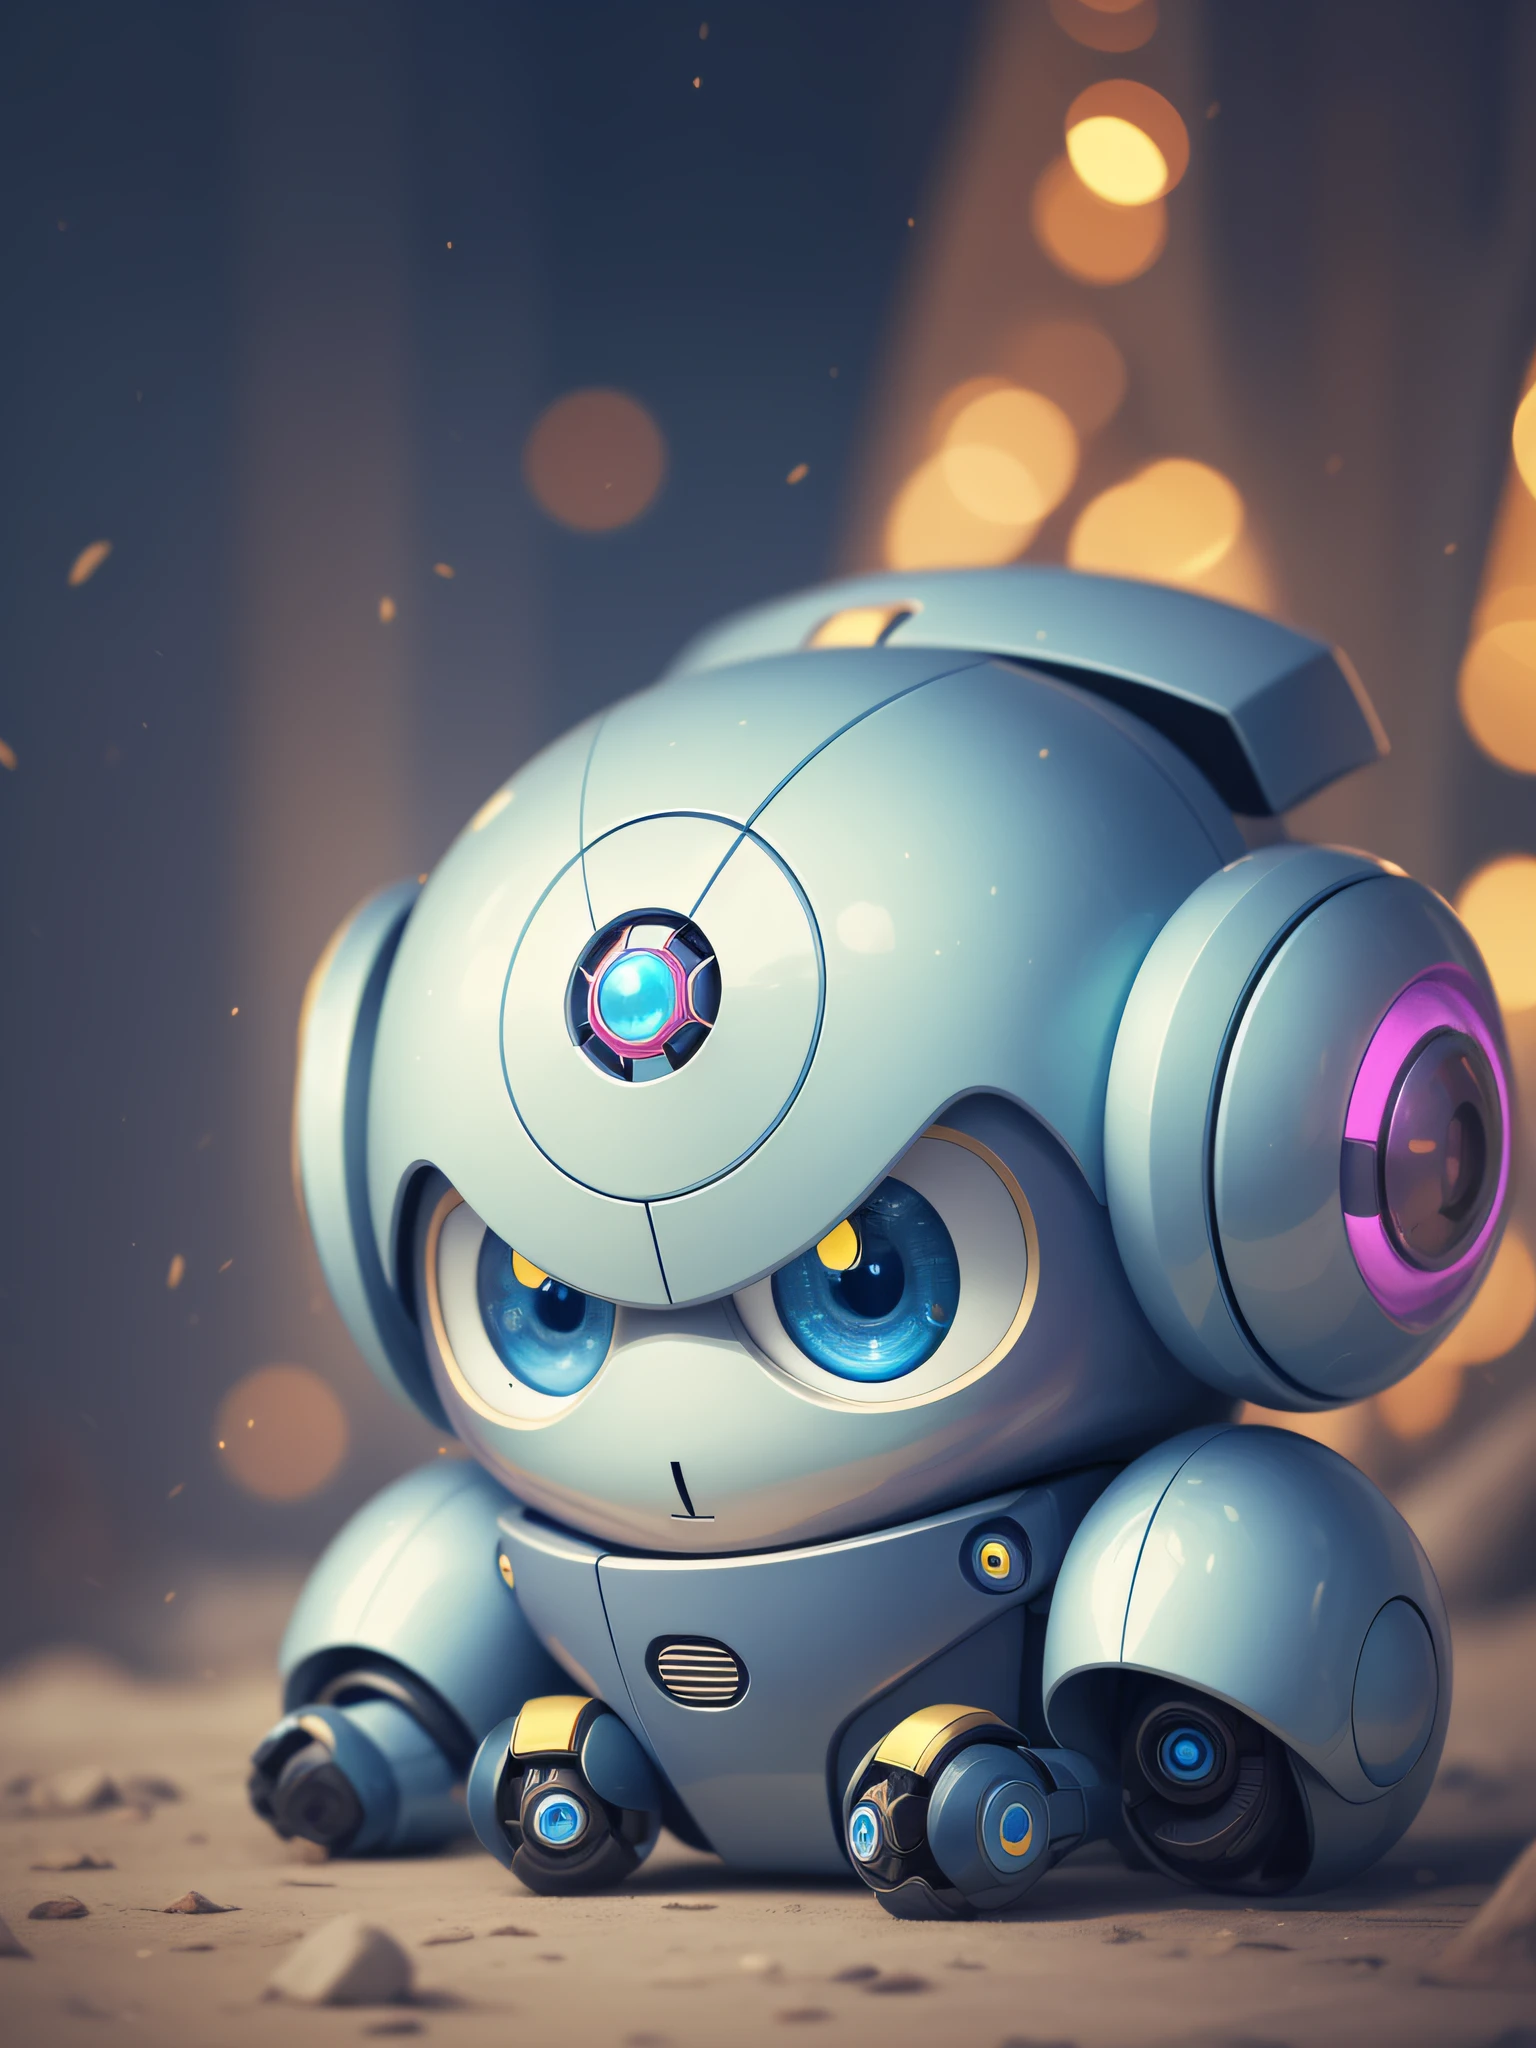 藍色可愛英俊機器人黃色aiartwork可愛可愛可愛卡哇伊幻想人物幻想生物機器人化機器人尼克